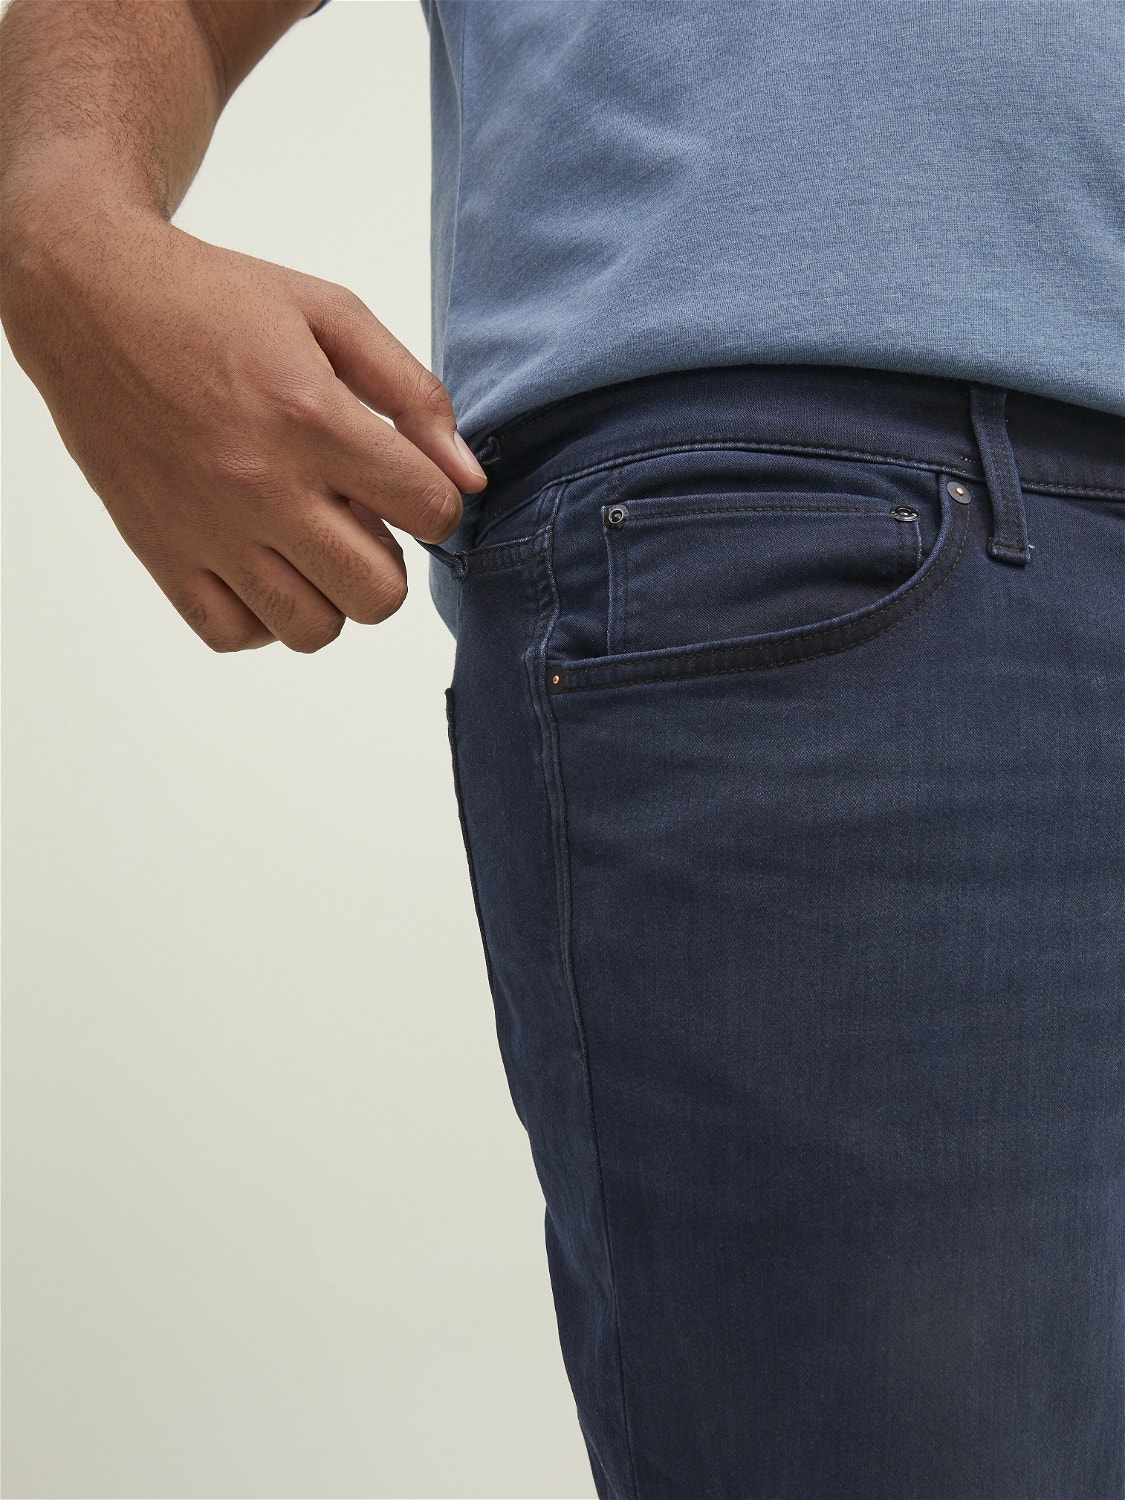 Jack & Jones Plus Size Regular Fit Jeans Shorts -Blue Denim - 12209236